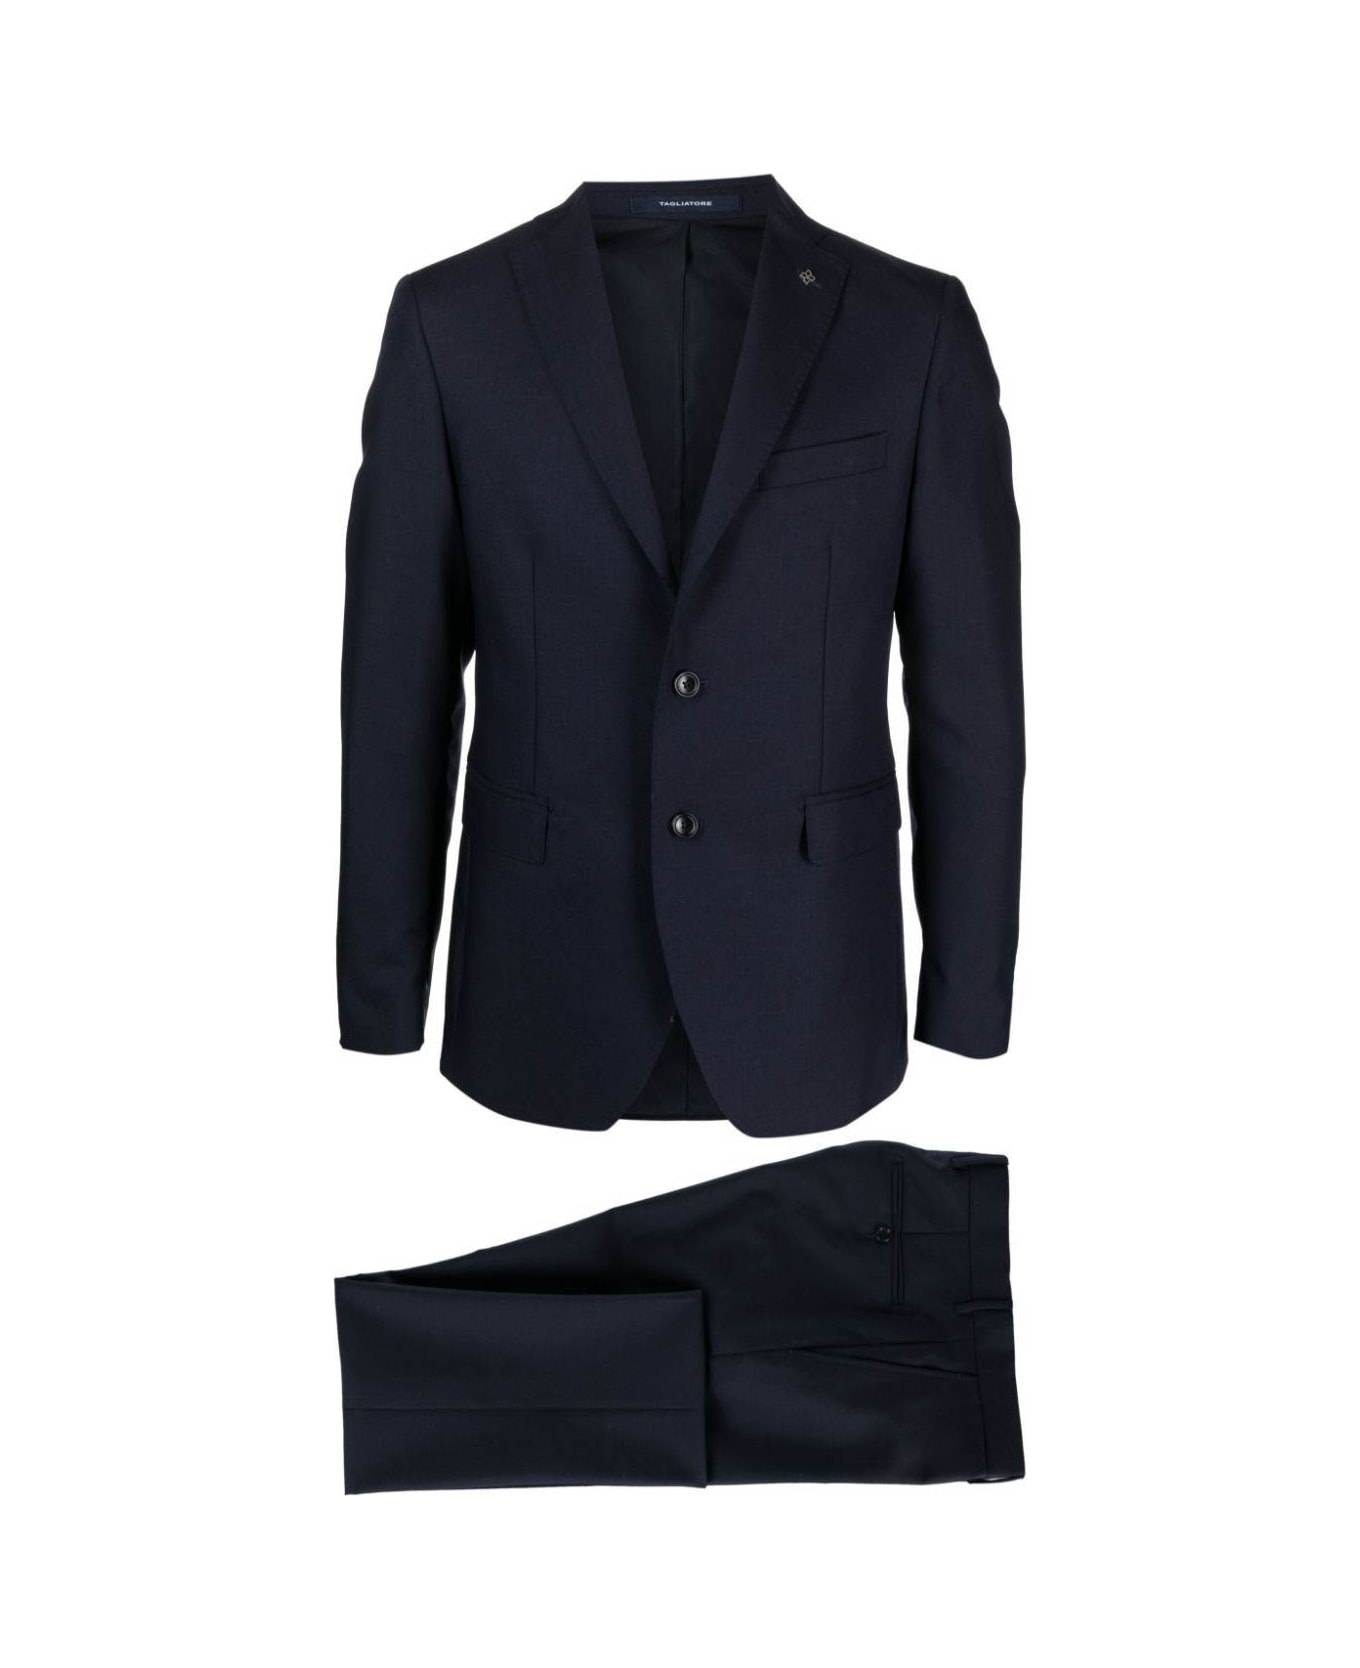 Tagliatore Suit - Navy スーツ